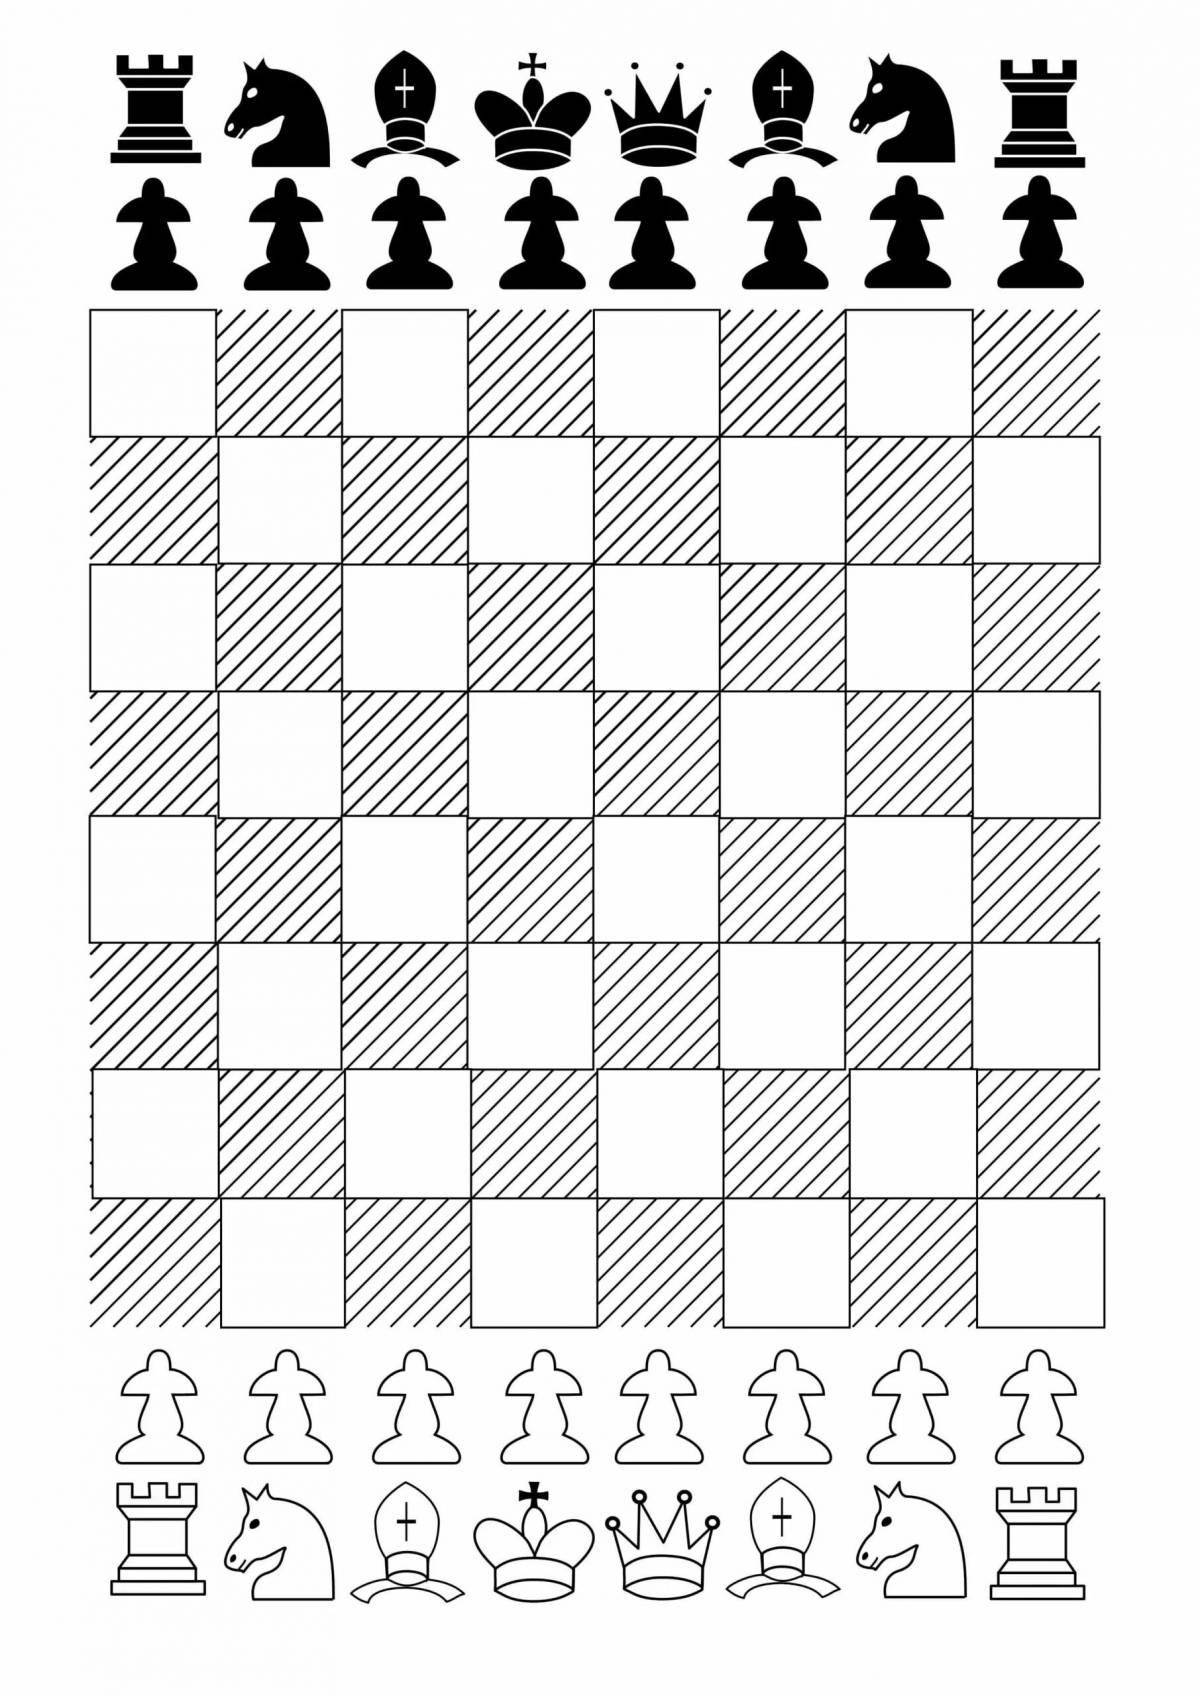 Children's chessboard #25